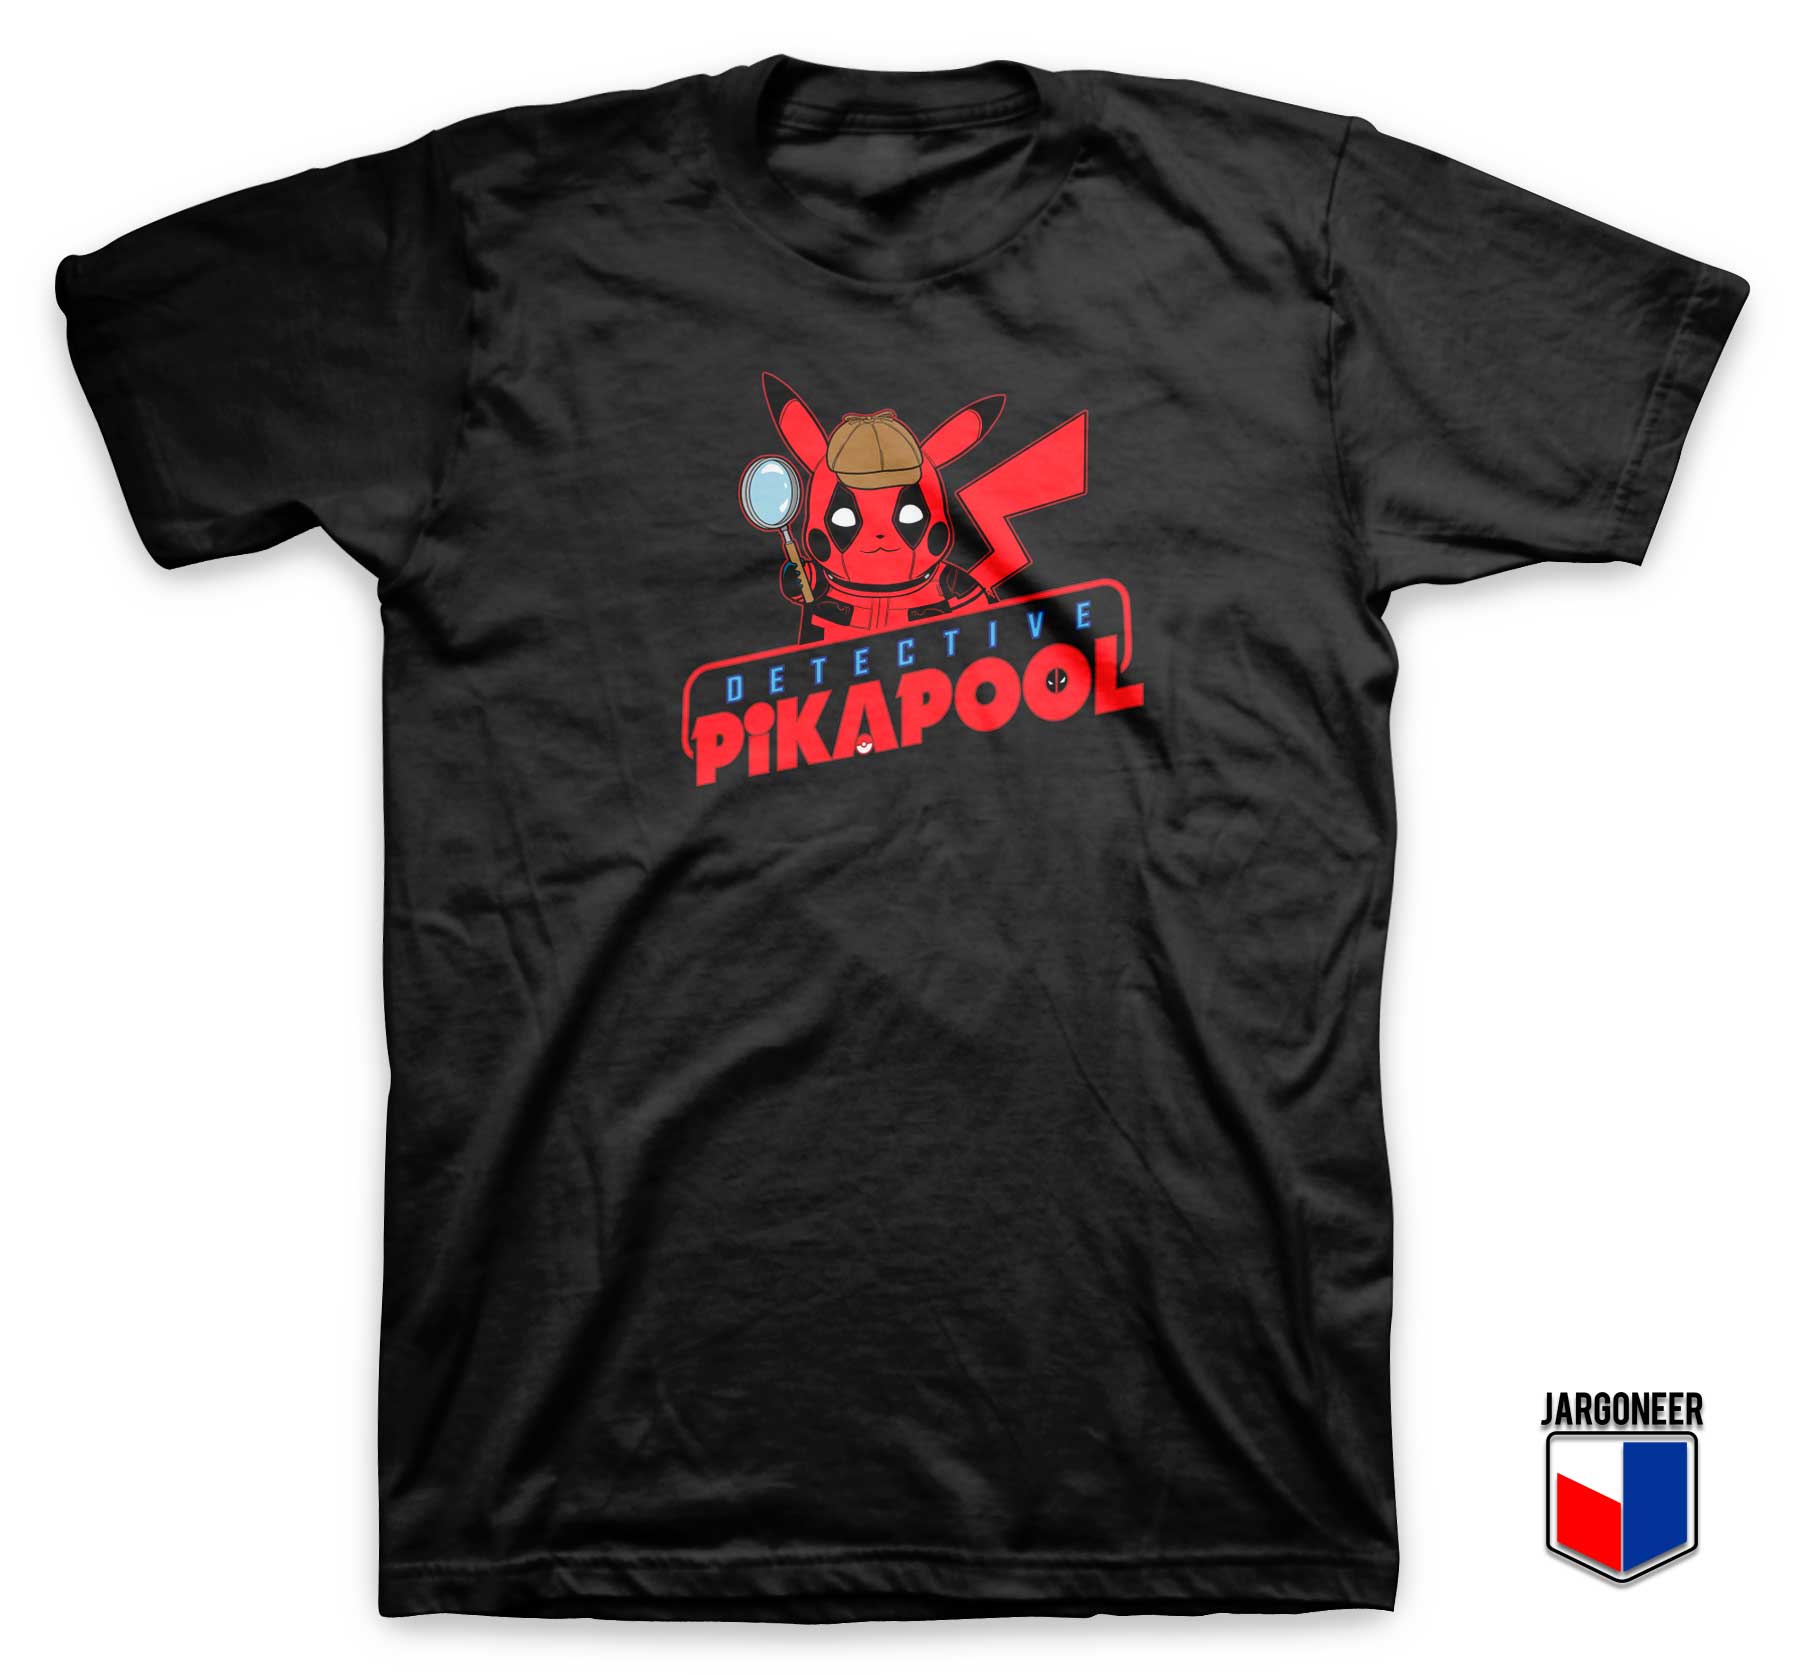 Detective Pikapool T Shirt - Shop Unique Graphic Cool Shirt Designs